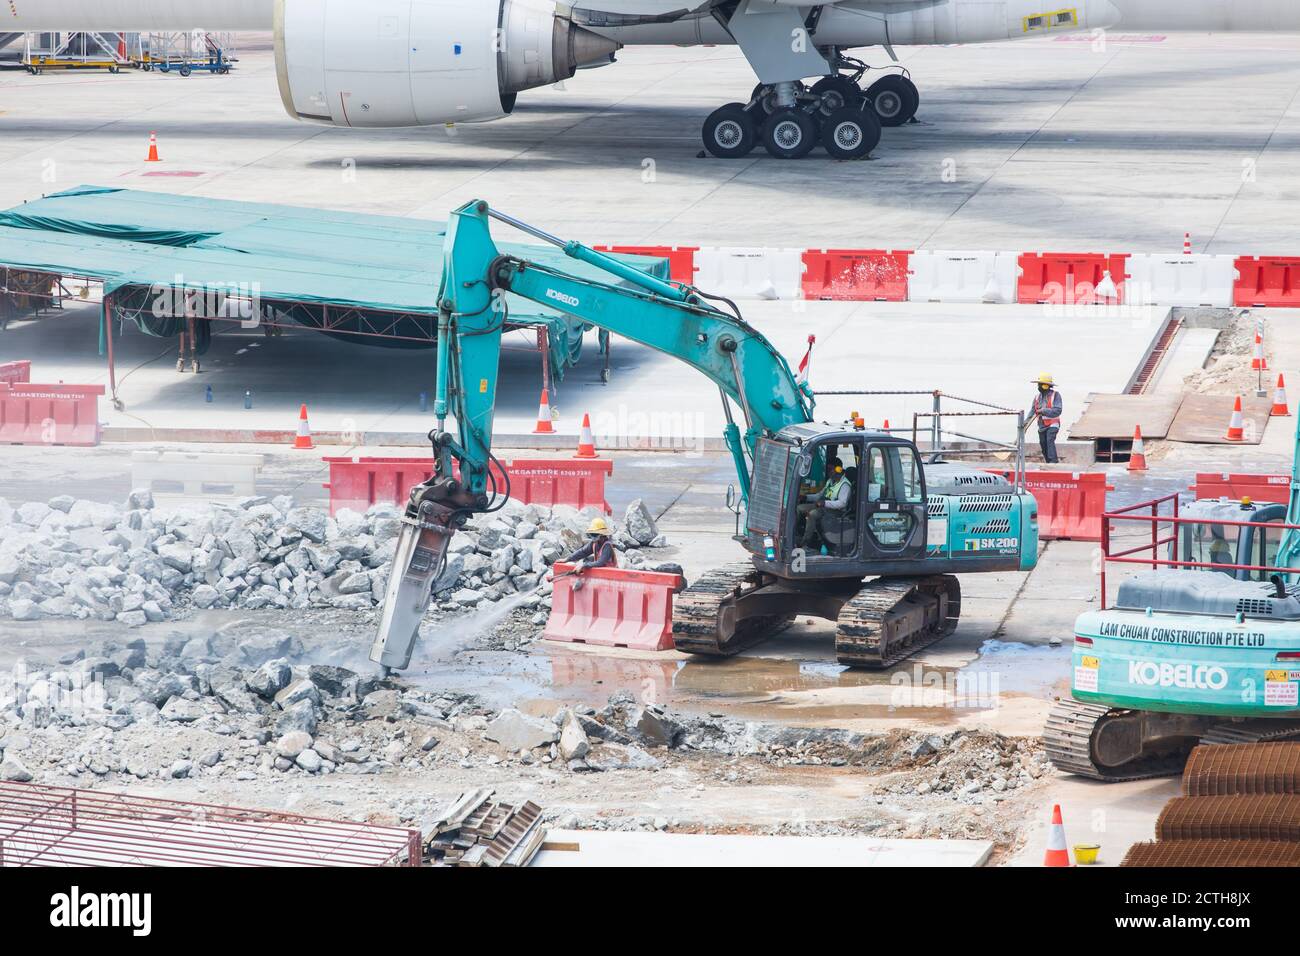 Grembiule dell'aeroporto in fase di ricostruzione, un lavoratore spruzzerà getti d'acqua sul trapano dell'escavatore per raffreddare la temperatura riscaldata. Foto Stock